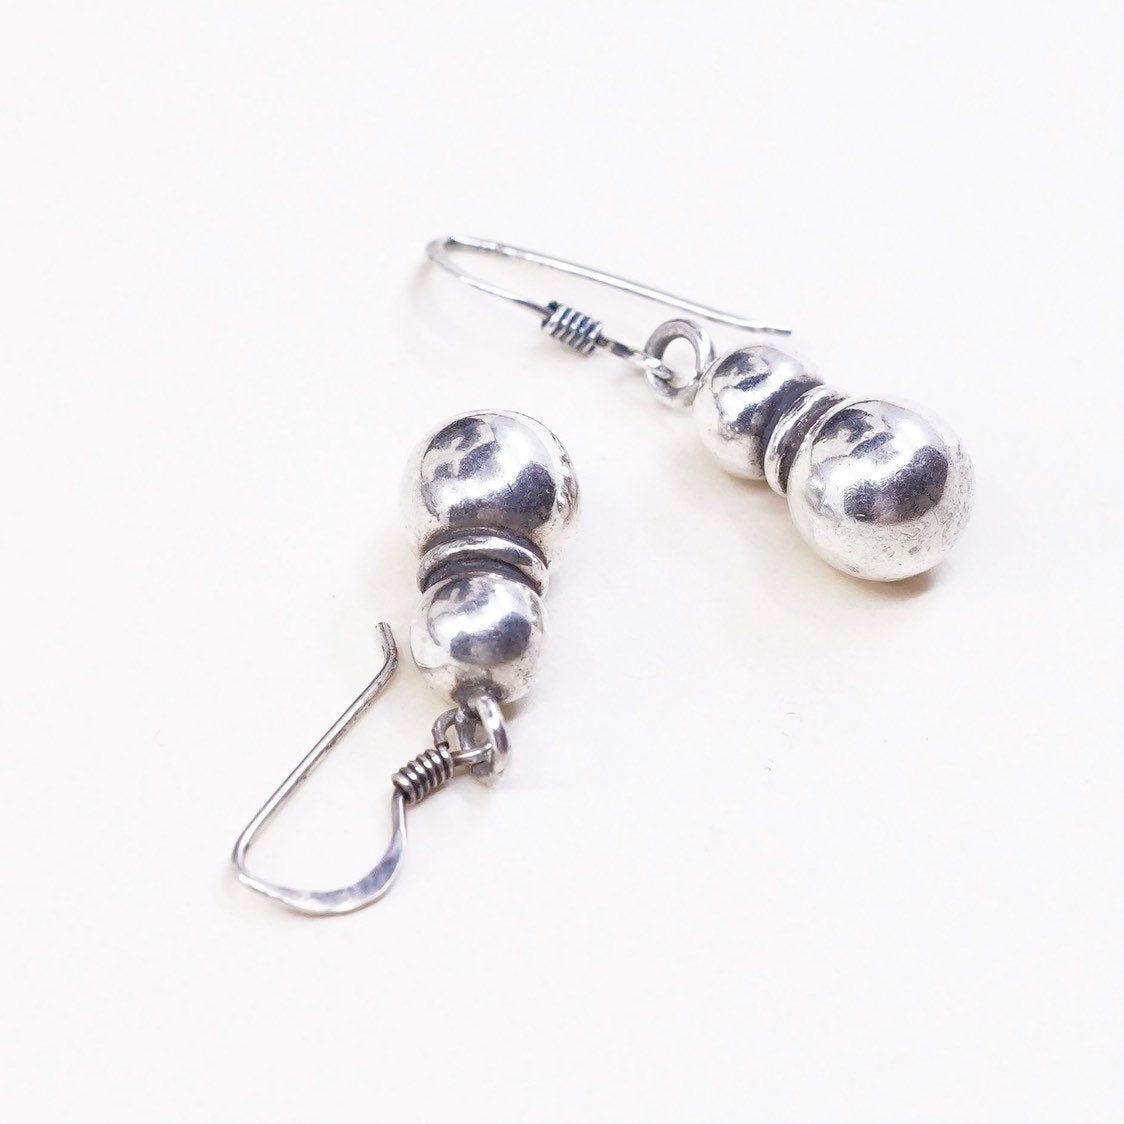 VTG sterling silver handmade earrings, 925 beads dangles, stamped 925